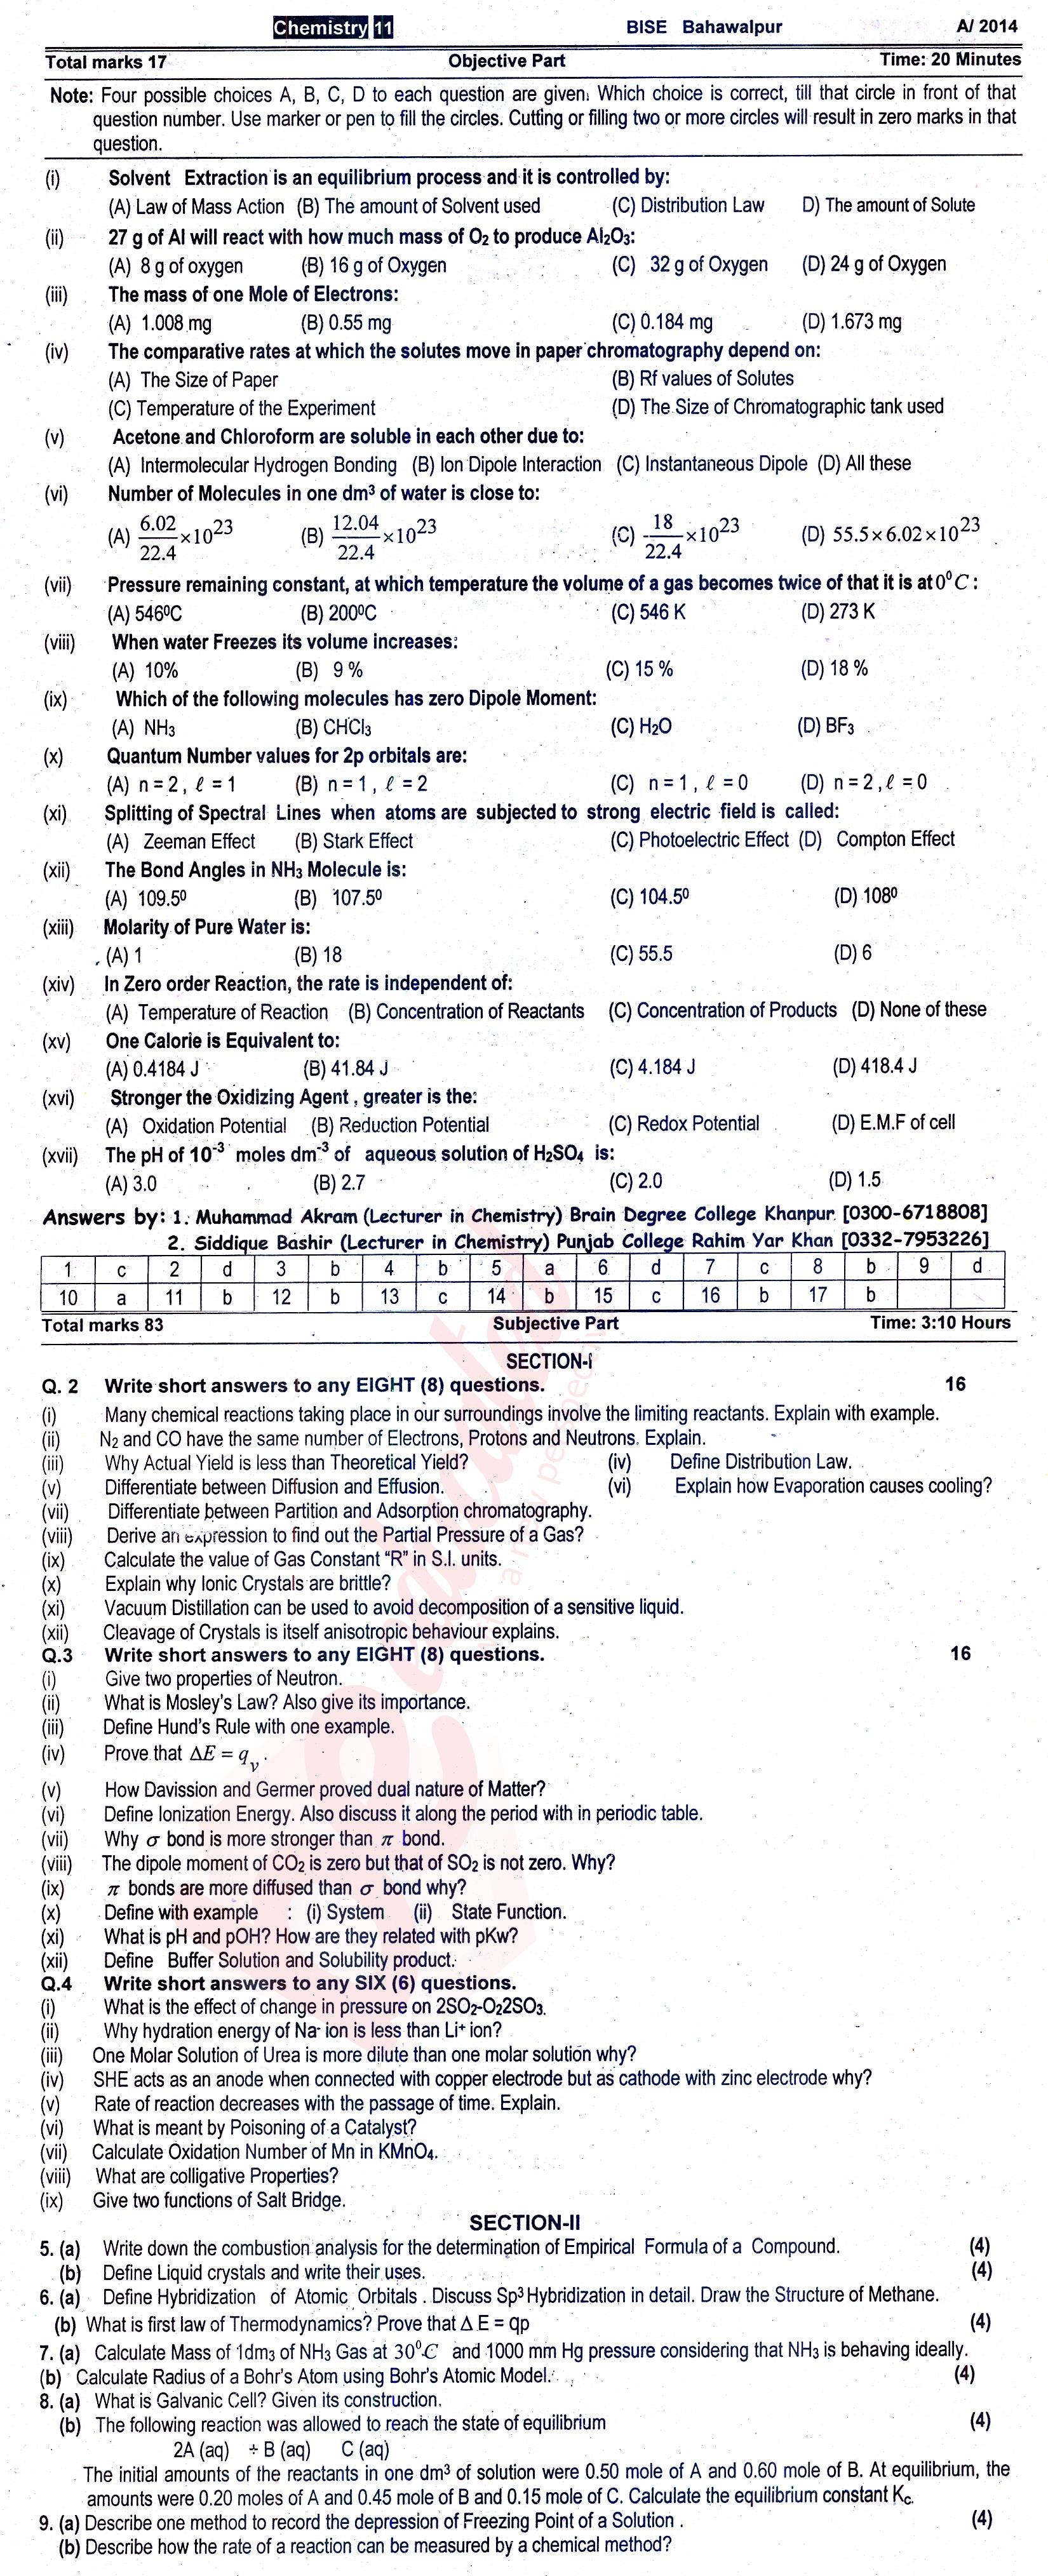 Chemistry FSC Part 1 Past Paper Group 1 BISE Bahawalpur 2014